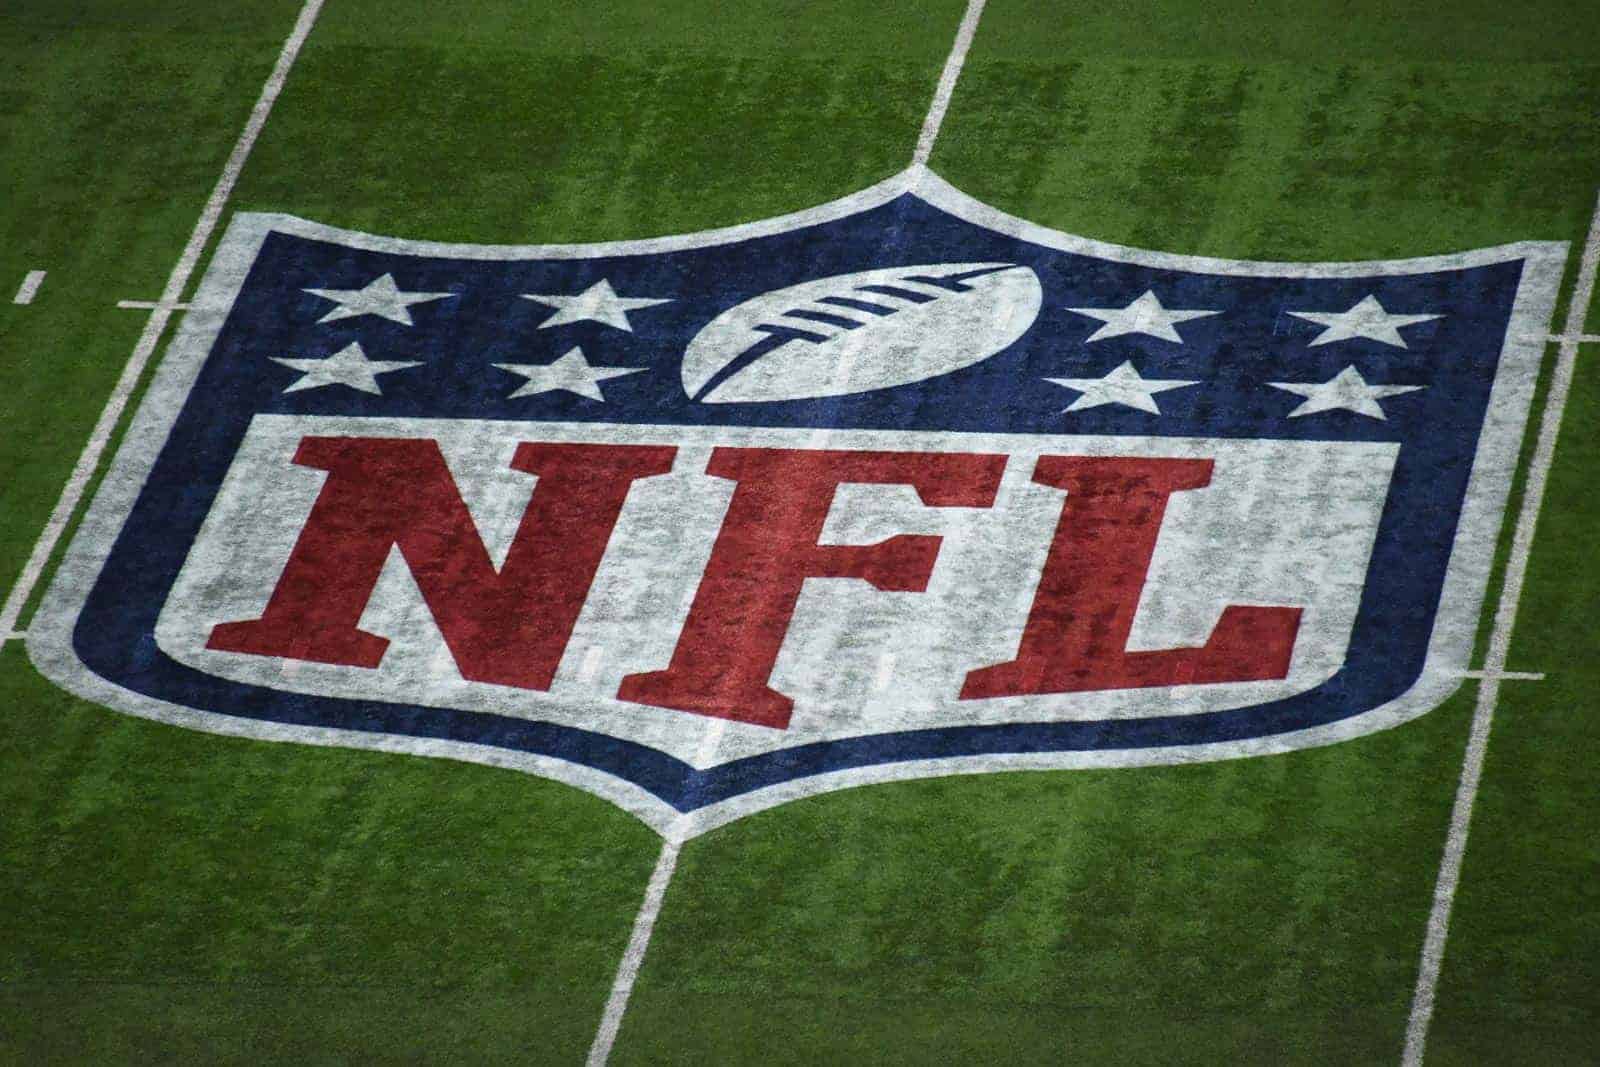 La Liga Nacional de Fútbol Americano (NFL) formuló un plan de reembolso de boletos que afectará a los partidos de pretemporada y de la temporada regular que puedan ser cancelados o se tengan que disputar sin aficionados por causa del coronavirus. A pesar que la NFL tiene previsto jugar un calendario completo de temporada regular 2020-21, sin cambio de fechas, que comienza el próximo mes de septiembre. El comisionado de la NFL, Roger Goodell, envió este martes una nota a cada uno de los 32 equipos, informándoles de su plan de reembolso a los aficionados. En el comunicado, Goodell indica que sin excepción, todos los clubes tendrán una política bajo la cual, 'si un partido se cancela o se juega bajo condiciones que prohíben la asistencia de los aficionados, cualquier persona que compre un boleto directamente del equipo, tendrá la opción de recibir un reembolso completo o aplicar la cantidad pagada para una compra futura de boletos directamente del club'. Goodell también informó que en cuanto al mercado secundario, la liga recibió promesas de Ticketmaster y SeatGeek que aplicarán los reembolsos completos disponibles a todas las ventas de boletos dentro de los 30 días posteriores a la cancelación. StubHub lo hará sólo cuando lo exija la ley estatal correspondiente. La liga ya había dado a conocer que el jueves de esta semana dará a conocer su calendario de temporada regular 2020-21, además de anunciar la cancelación de los cuatro partidos que se iban a disputar en Londres y otro en México. 'Al prepararnos para todos los elementos de la temporada 2020, incluido el lanzamiento del cronograma, hemos considerado las circunstancias únicas que enfrentamos este año', escribió Goodell, 'y hemos dejado claro que todas nuestras decisiones serán guiadas por consejos médicos y de salud pública y cumpliremos con las regulaciones gubernamentales'. El comisionado de la NFL señaló que 'estaremos preparados para hacer los ajustes necesarios tal como lo hemos hecho en otros contextos, como el programa de temporada baja y el sorteo universitario'. La temporada 2020 comenzará el 10 de septiembre, con el primer fin de semana completo de partidos del 13 al 14 de ese mismo mes. Fuente: EFE